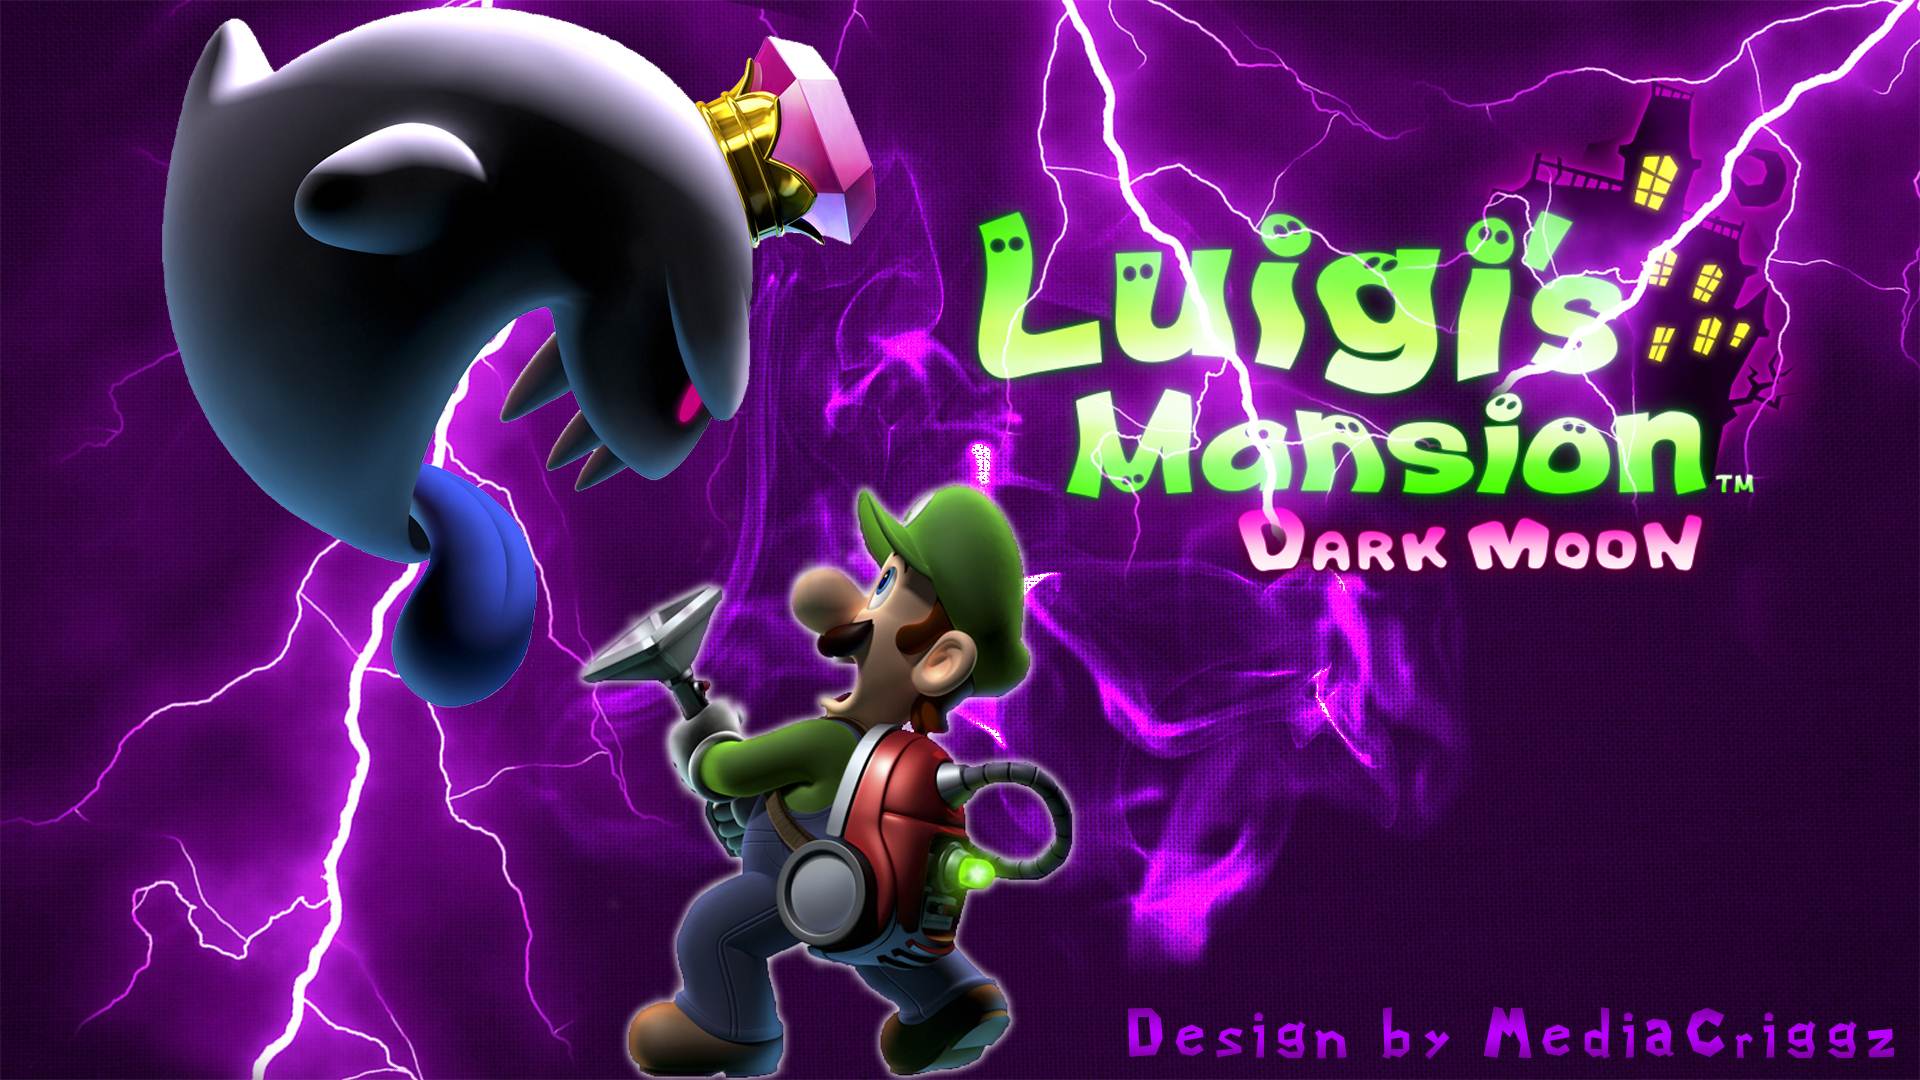 download free luigis mansion dark moon a 4